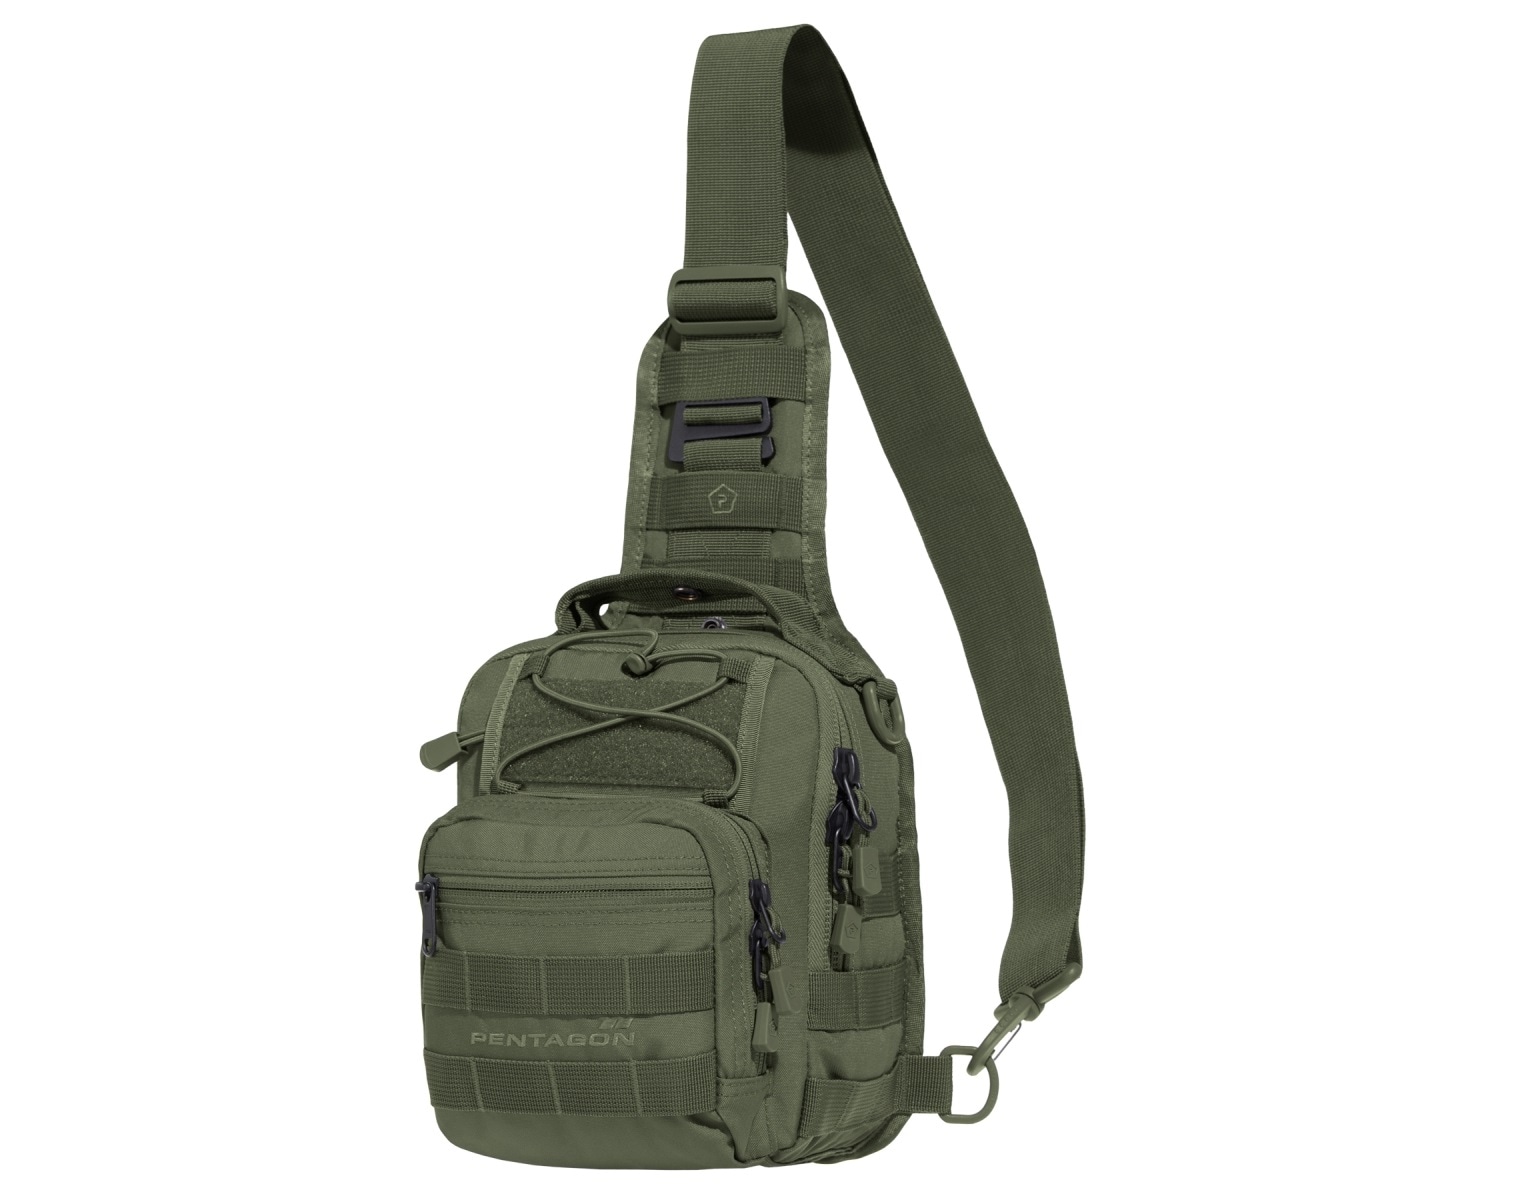 Torba Pentagon Universal Chest Bag 2.0 - 7 l - Olive